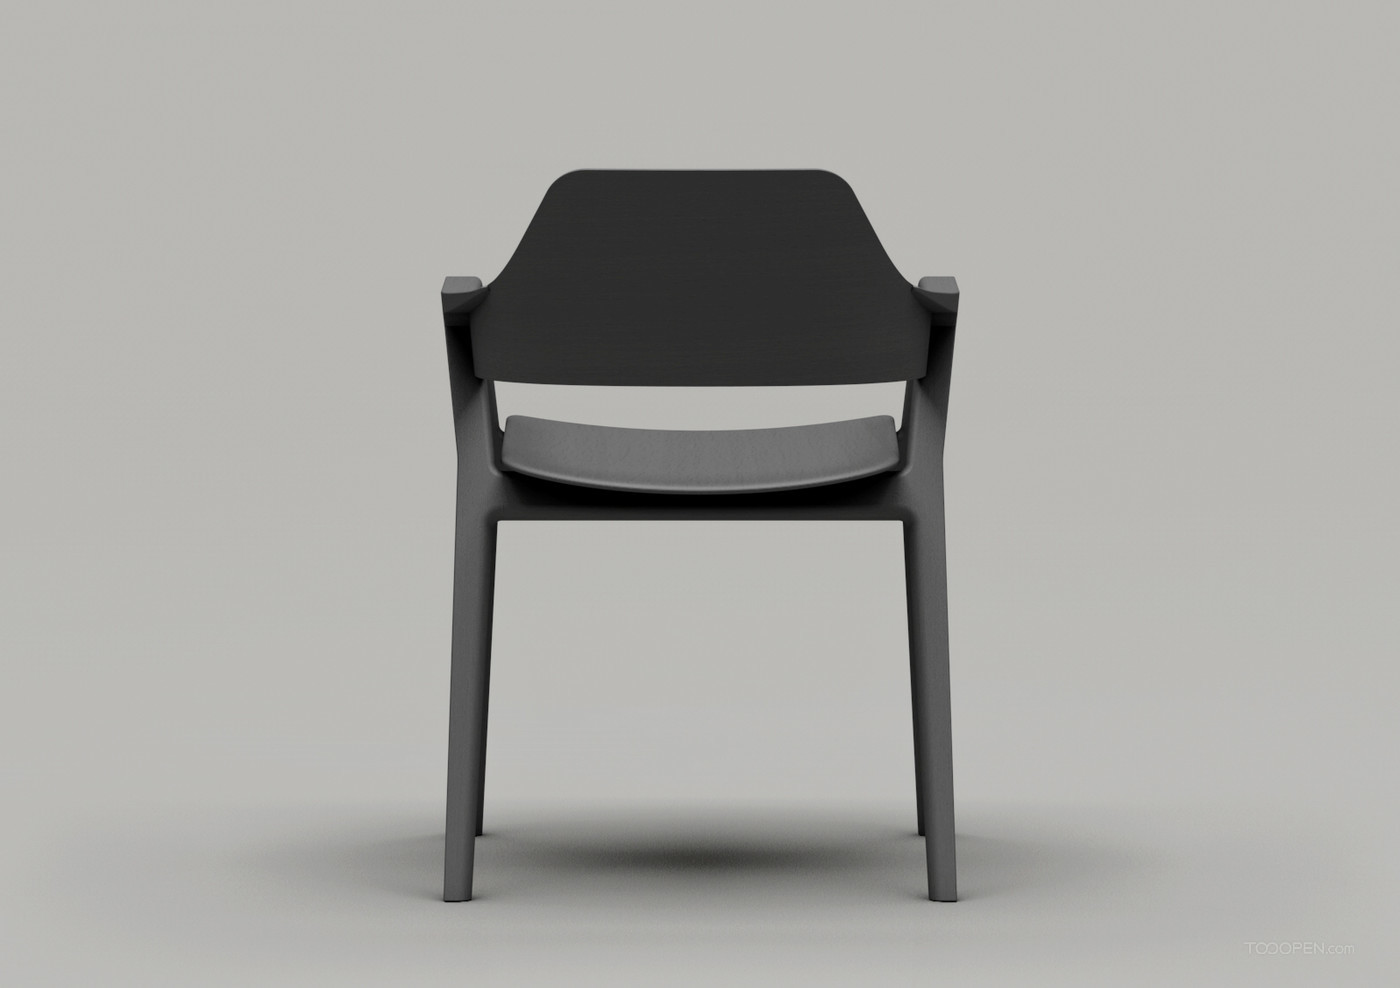 國外創意極簡座椅家具產品設計欣賞-10